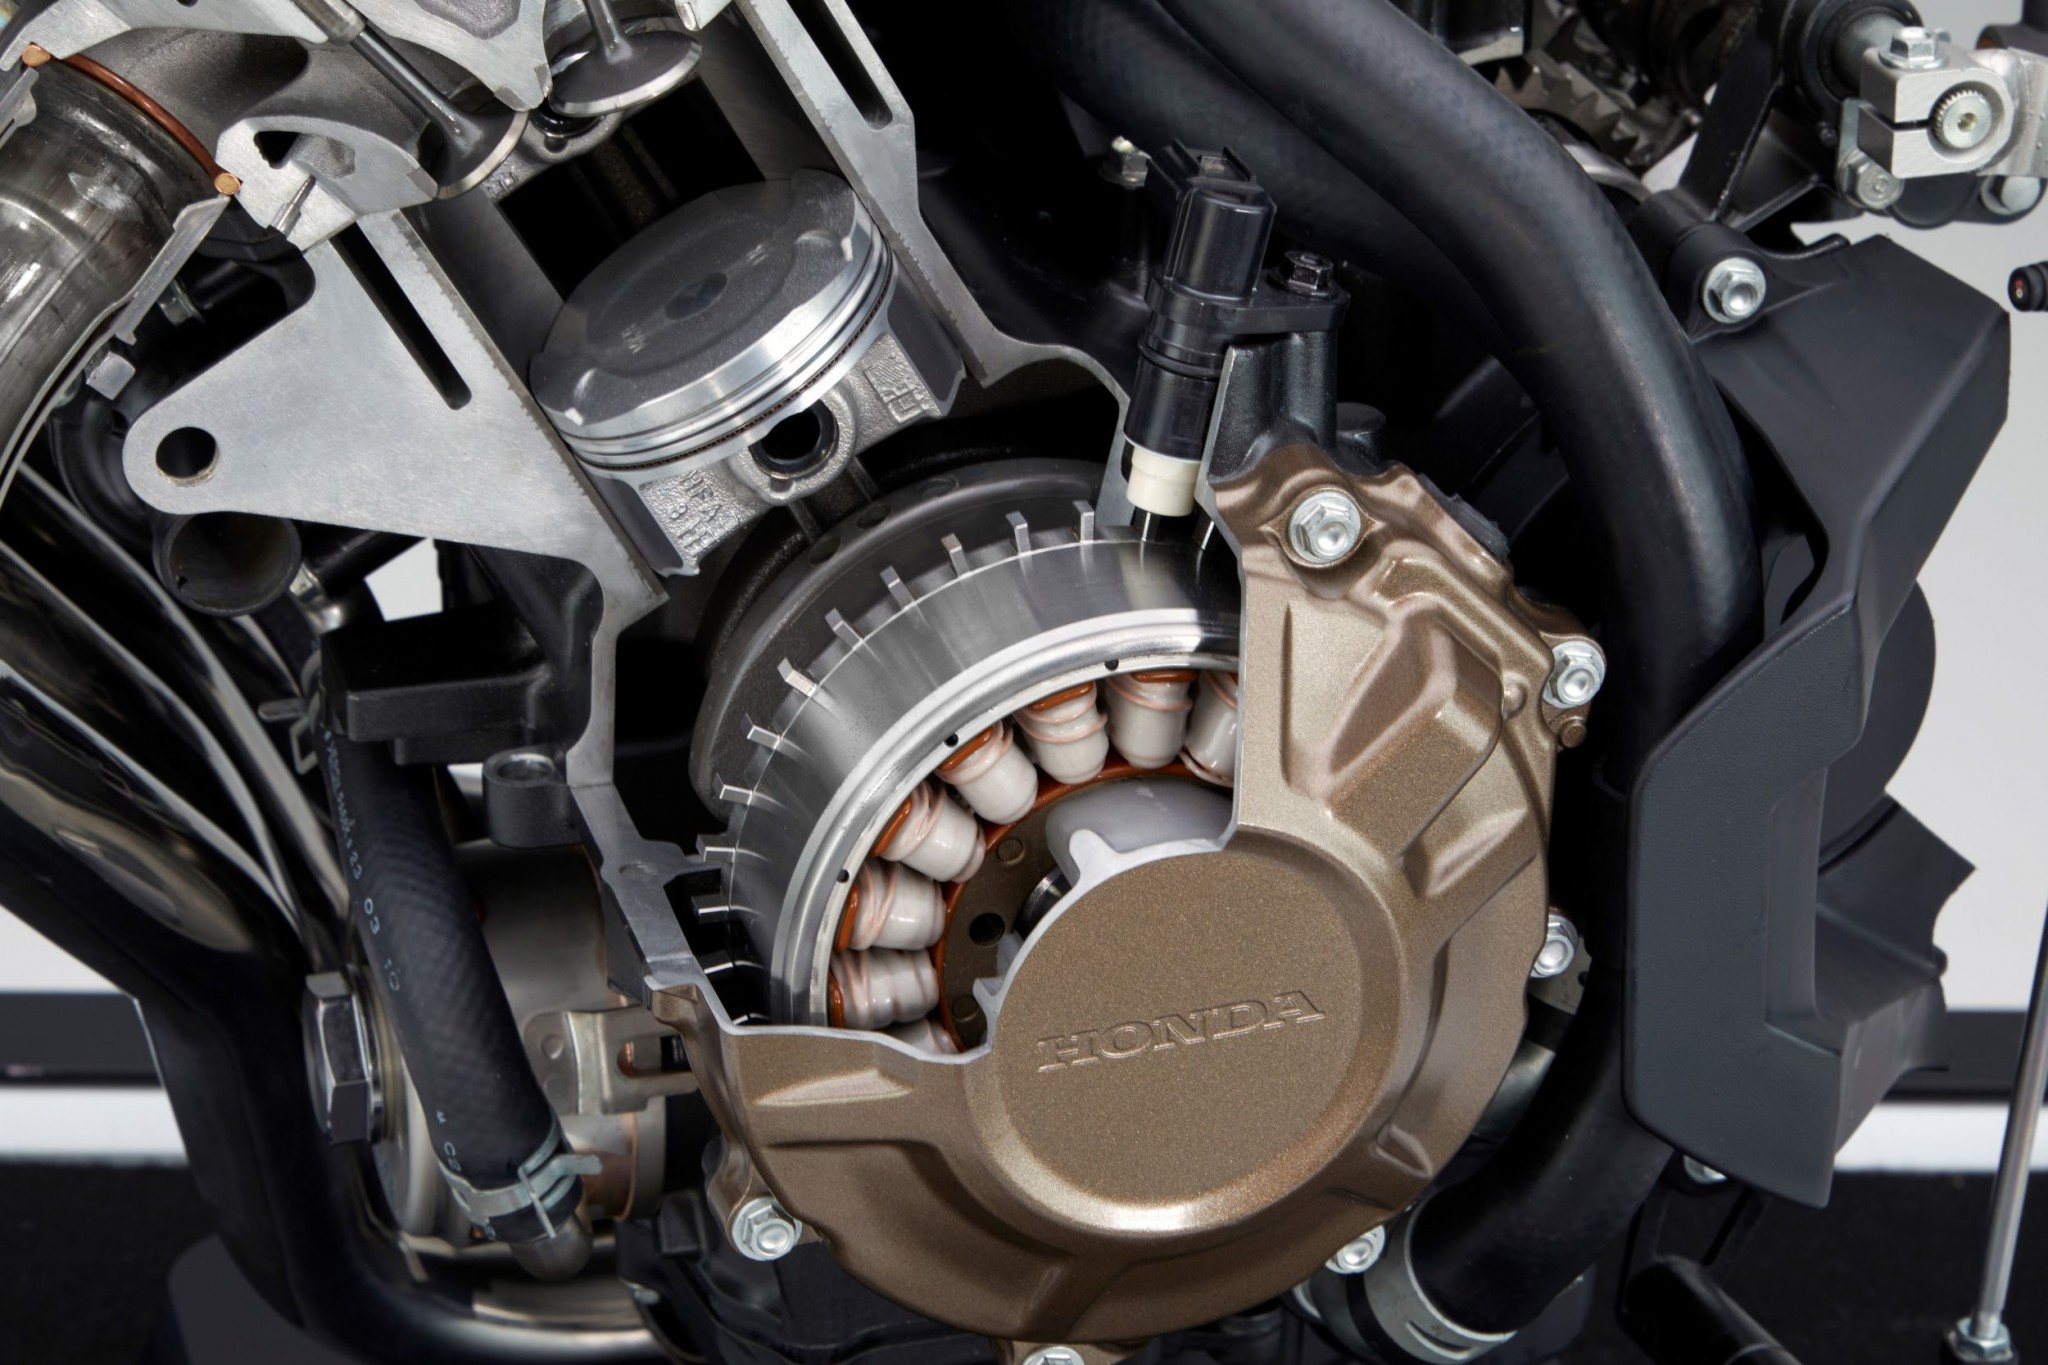 Test elektronske kvačila Honda CBR650R 2024

Honda je nedavno predstavila novu verziju svog popularnog motocikla CBR650R, koji sada dolazi sa elektronskim kvačilom, poznatim kao E-Clutch. Ova inovacija obećava da će olakšati vožnju omogućavajući vozačima da menjaju brzine bez potrebe za ručnim korišćenjem kvačila. 

Elektronsko kvačilo funkcioniše tako što automatski reguliše pritisak potreban za aktiviranje kvačila, što omogućava glatke promene brzina bez prekida u isporuci snage. Ovo je posebno korisno pri vožnji u gradu, gde česte promene brzina mogu biti naporne i otežavaju koncentraciju na saobraćaj.

Testiranje ovog sistema pokazalo je da E-Clutch ne samo da olakšava upravljanje motociklom, već i povećava sigurnost vožnje. Vozači mogu da se fokusiraju na okolinu bez brige o mehaničkim aspektima vožnje, što je posebno važno za manje iskusne vozače.

Honda CBR650R sa elektronskim kvačilom biće dostupna na tržištu od 2024. godine i očekuje se da će privući veliki broj kupaca, kako iskusnih tako i onih koji tek ulaze u svet motociklizma. Ovaj model predstavlja značajan korak napred u tehnologiji motocikala i potencijalno postavlja nove standarde u industriji. - Слика 18